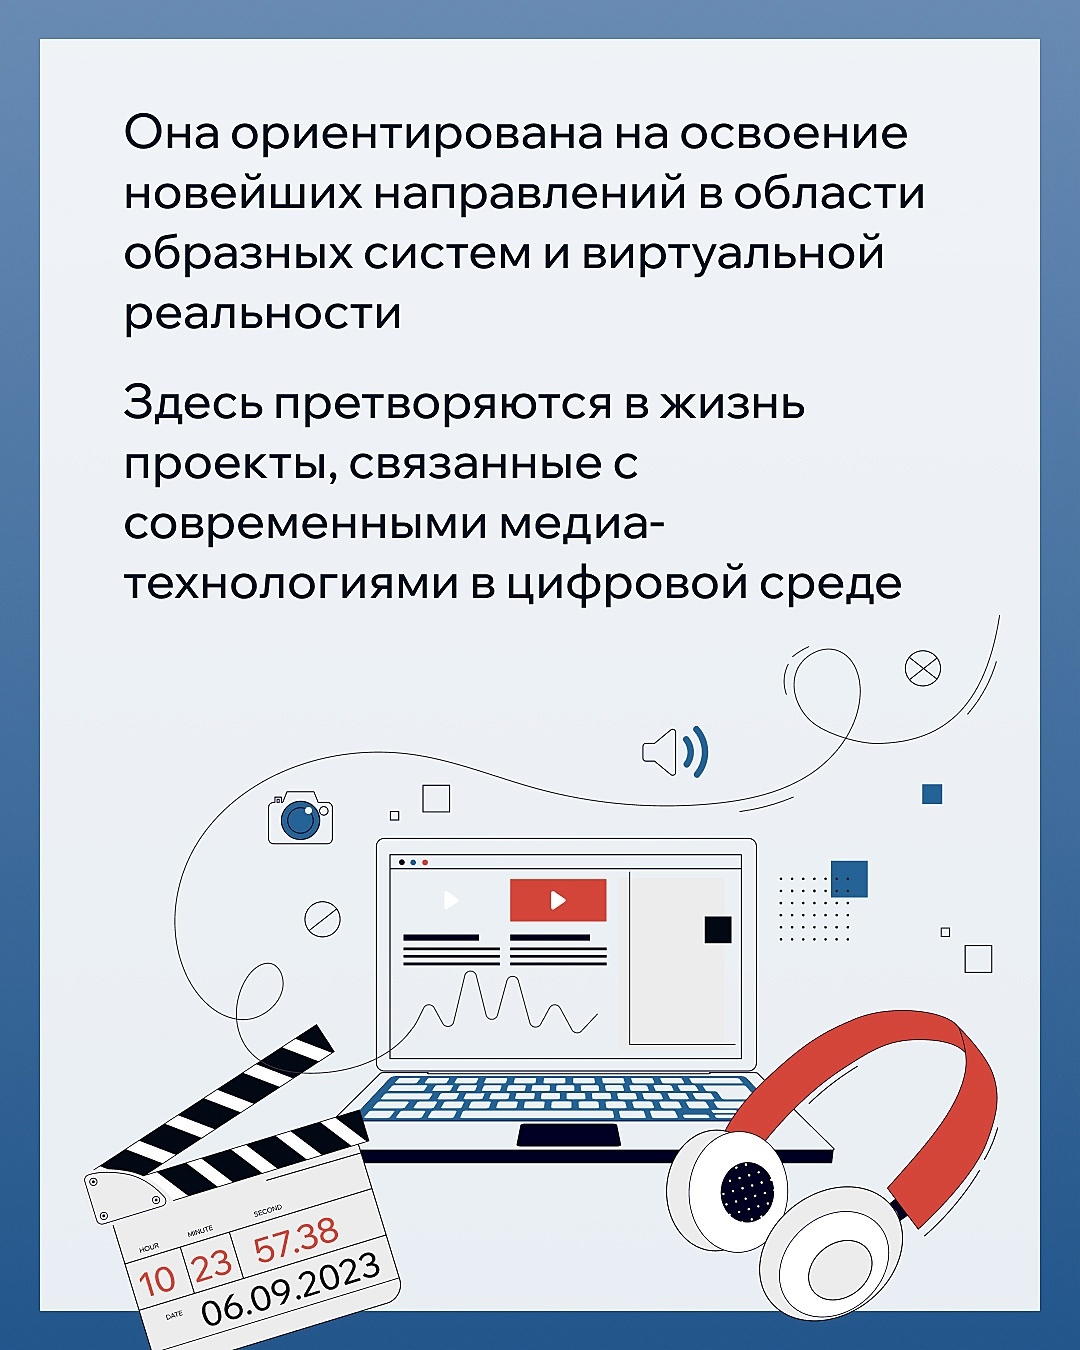 В Межвузовском студенческом кампусе будет размещена лаборатория «Медиадизайн и мультихудожественные цифровые технологии» УГНТУ